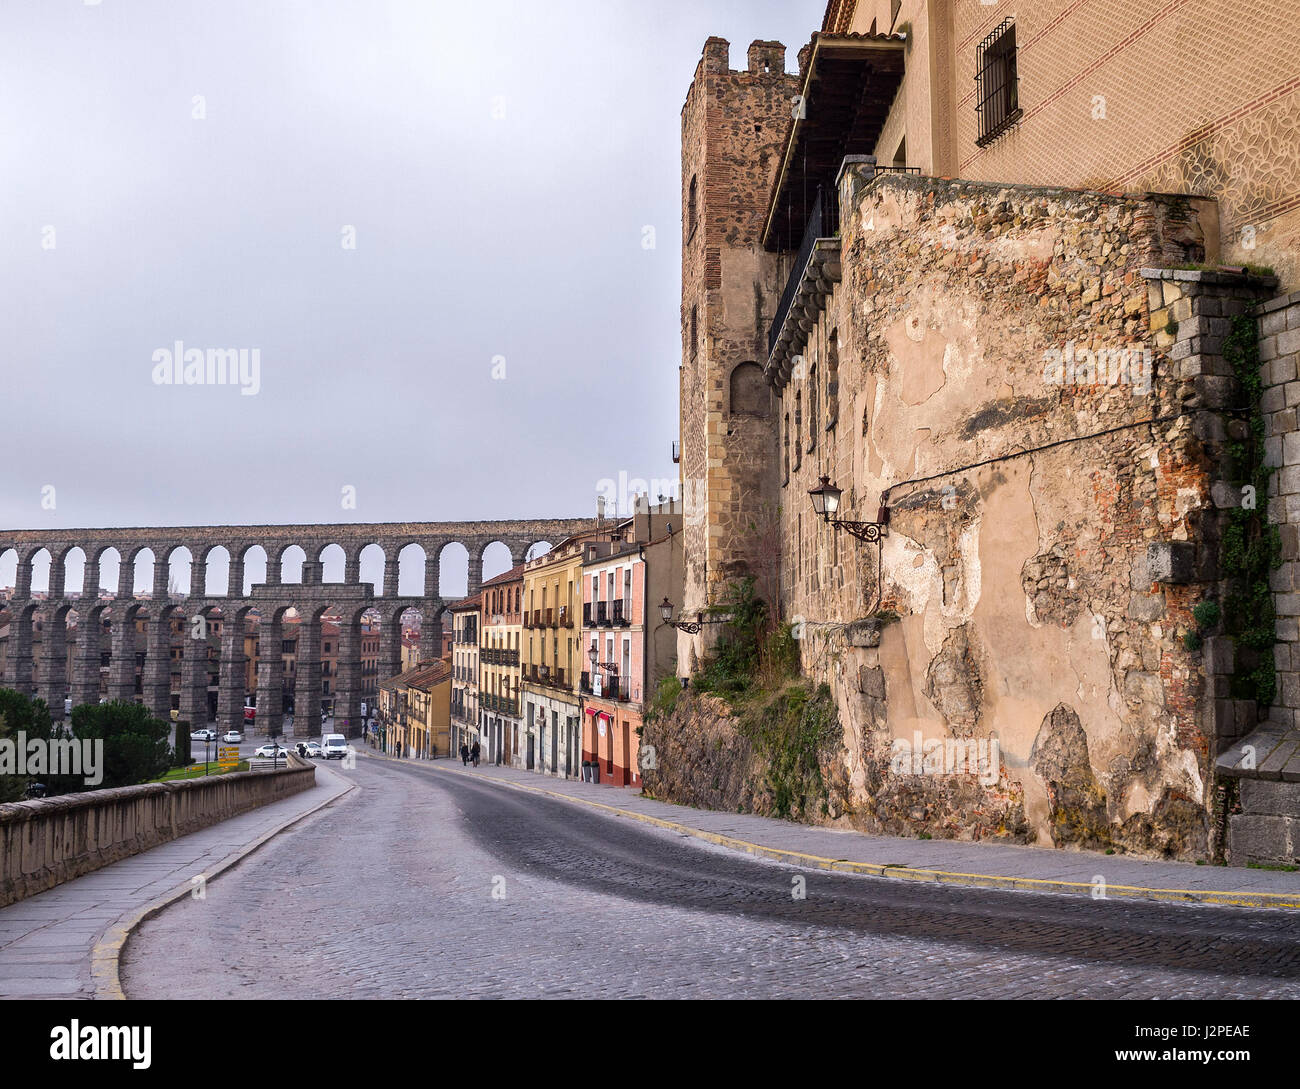 Vista desde la calle de San Juan del Acueducto de Segovia con la Casa de las cadenas o de los marqueses de Moya a la derecha, Castilla León, España. Stock Photo